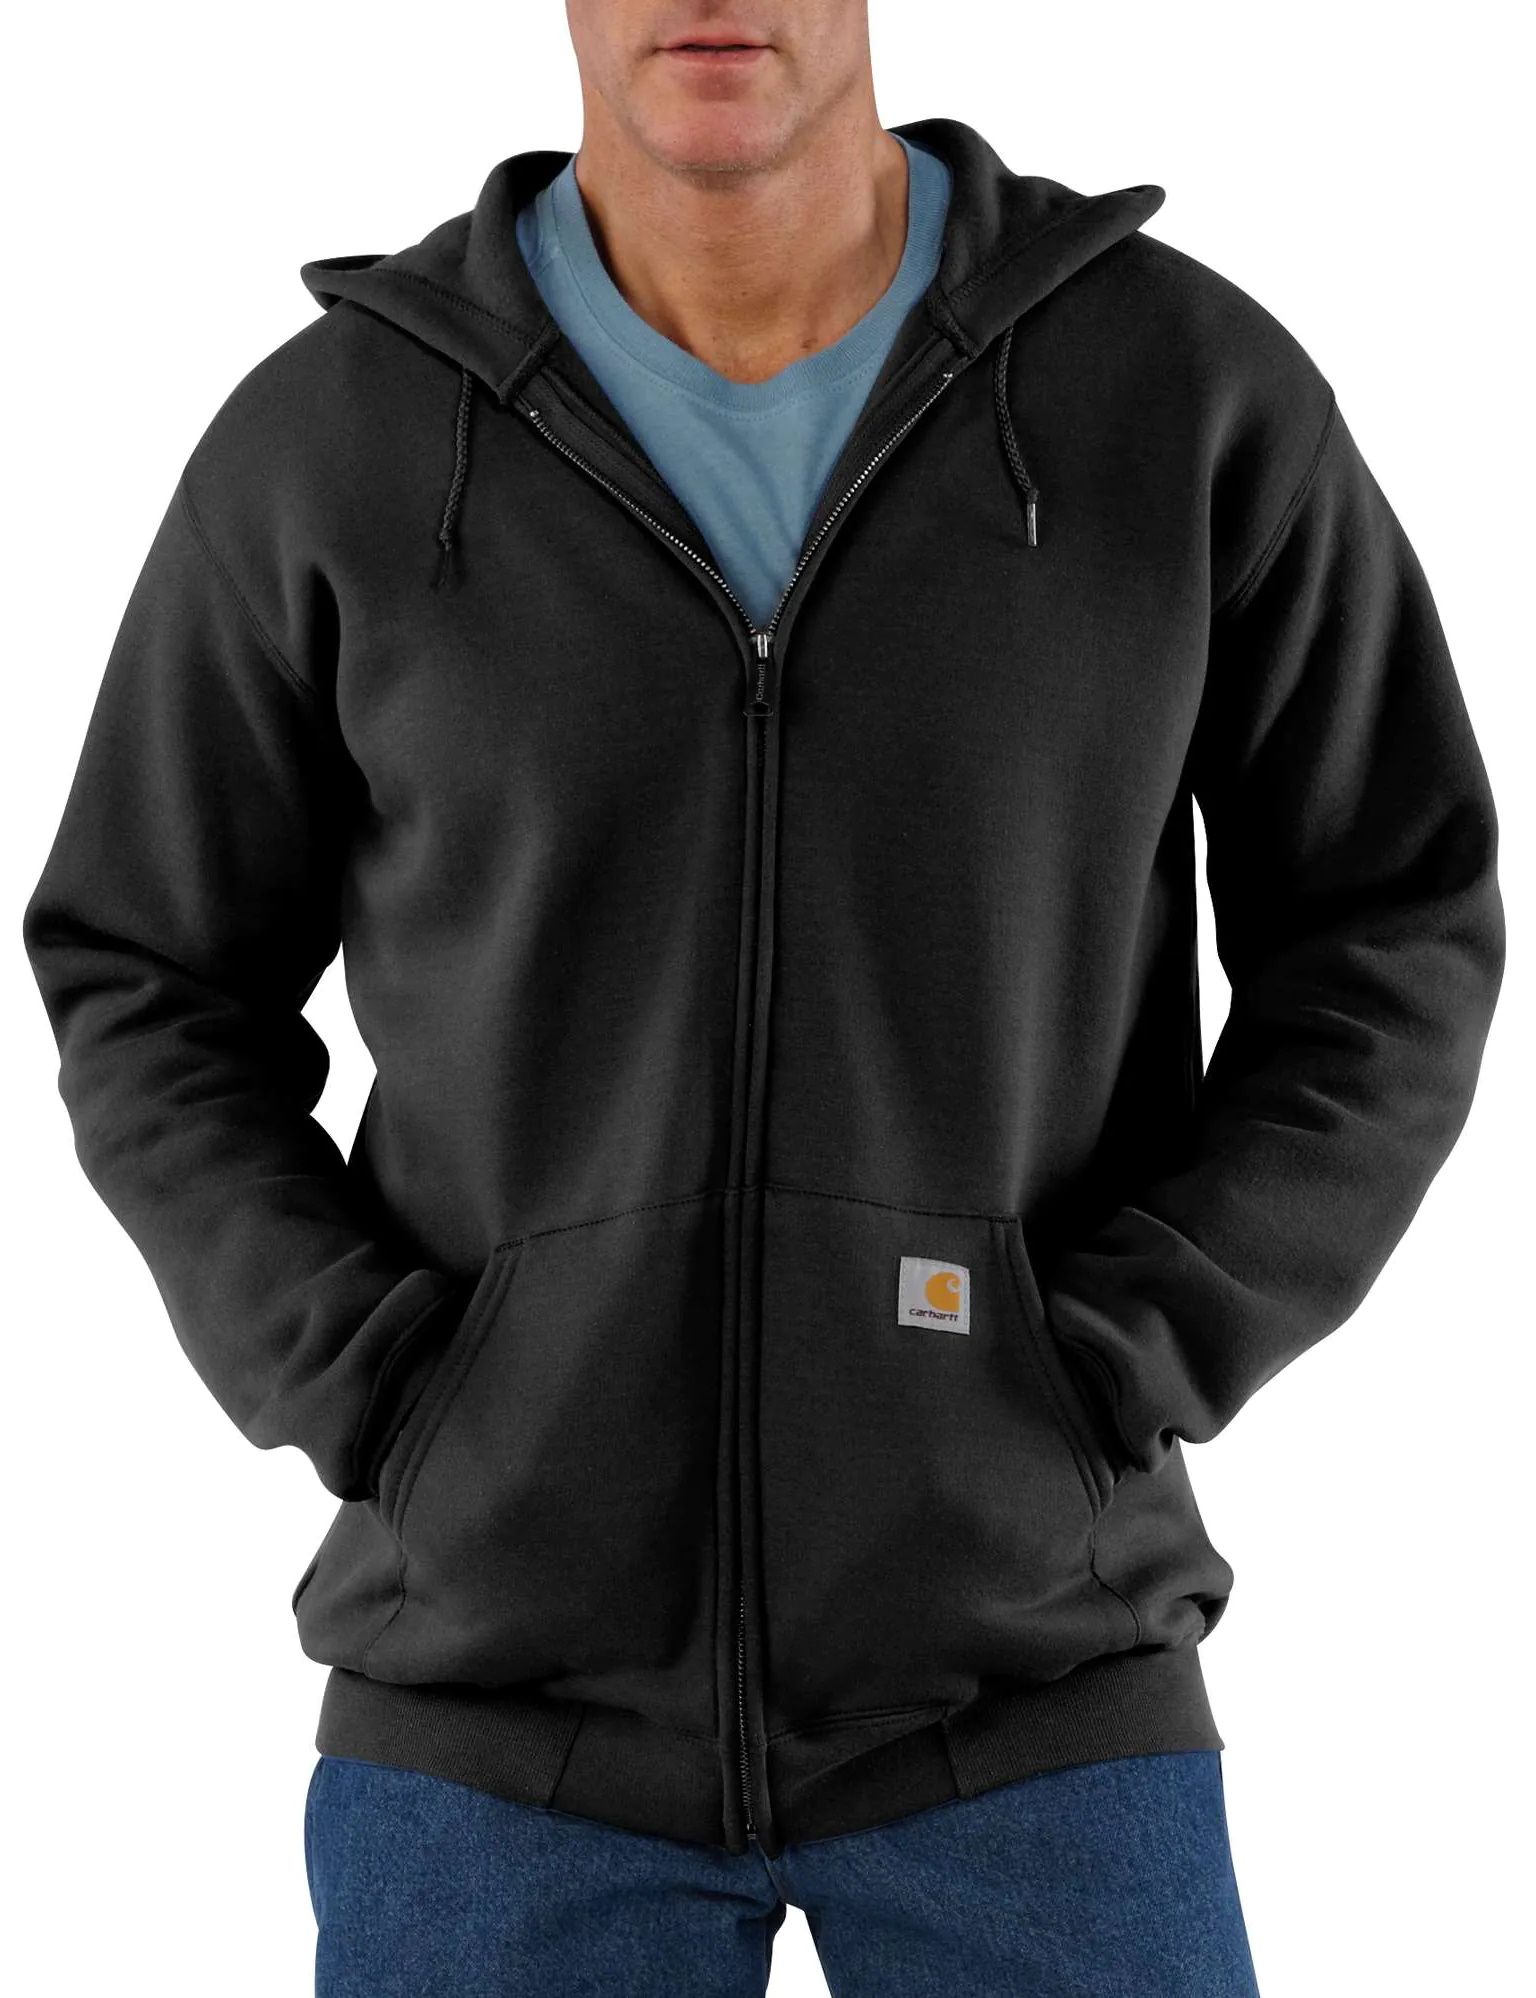 Men's Zip Hooded Sweatshirt Black